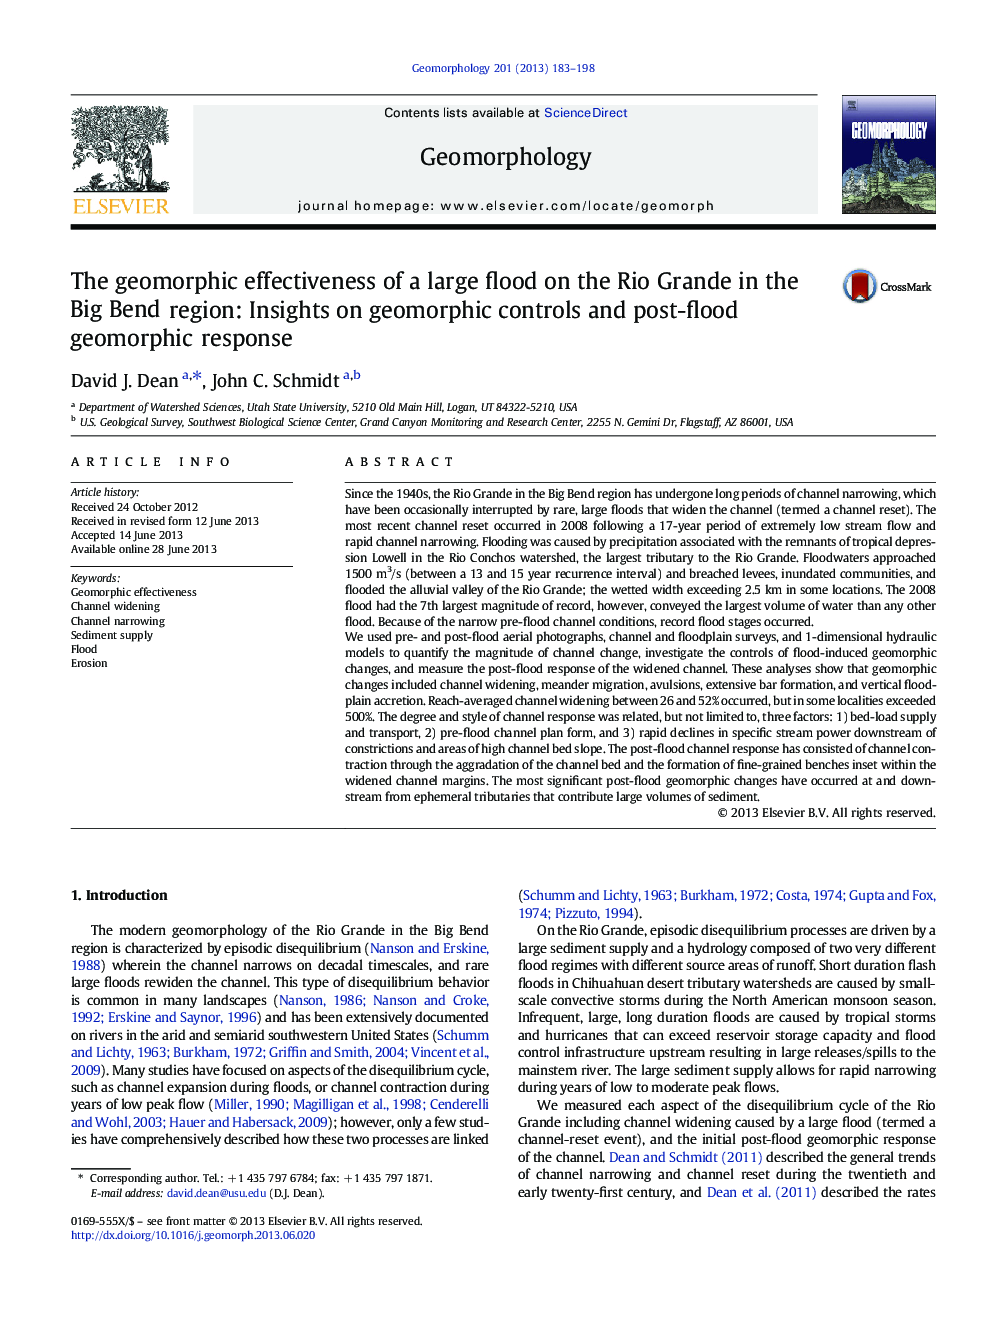 اثرات جغرافیایی یک سیل بزرگ در ریو گراند در ناحیه بیگ بنگ: بینش در مورد کنترل های ژئومورفیک و پاسخ ژئومورفیک پس از سیل 